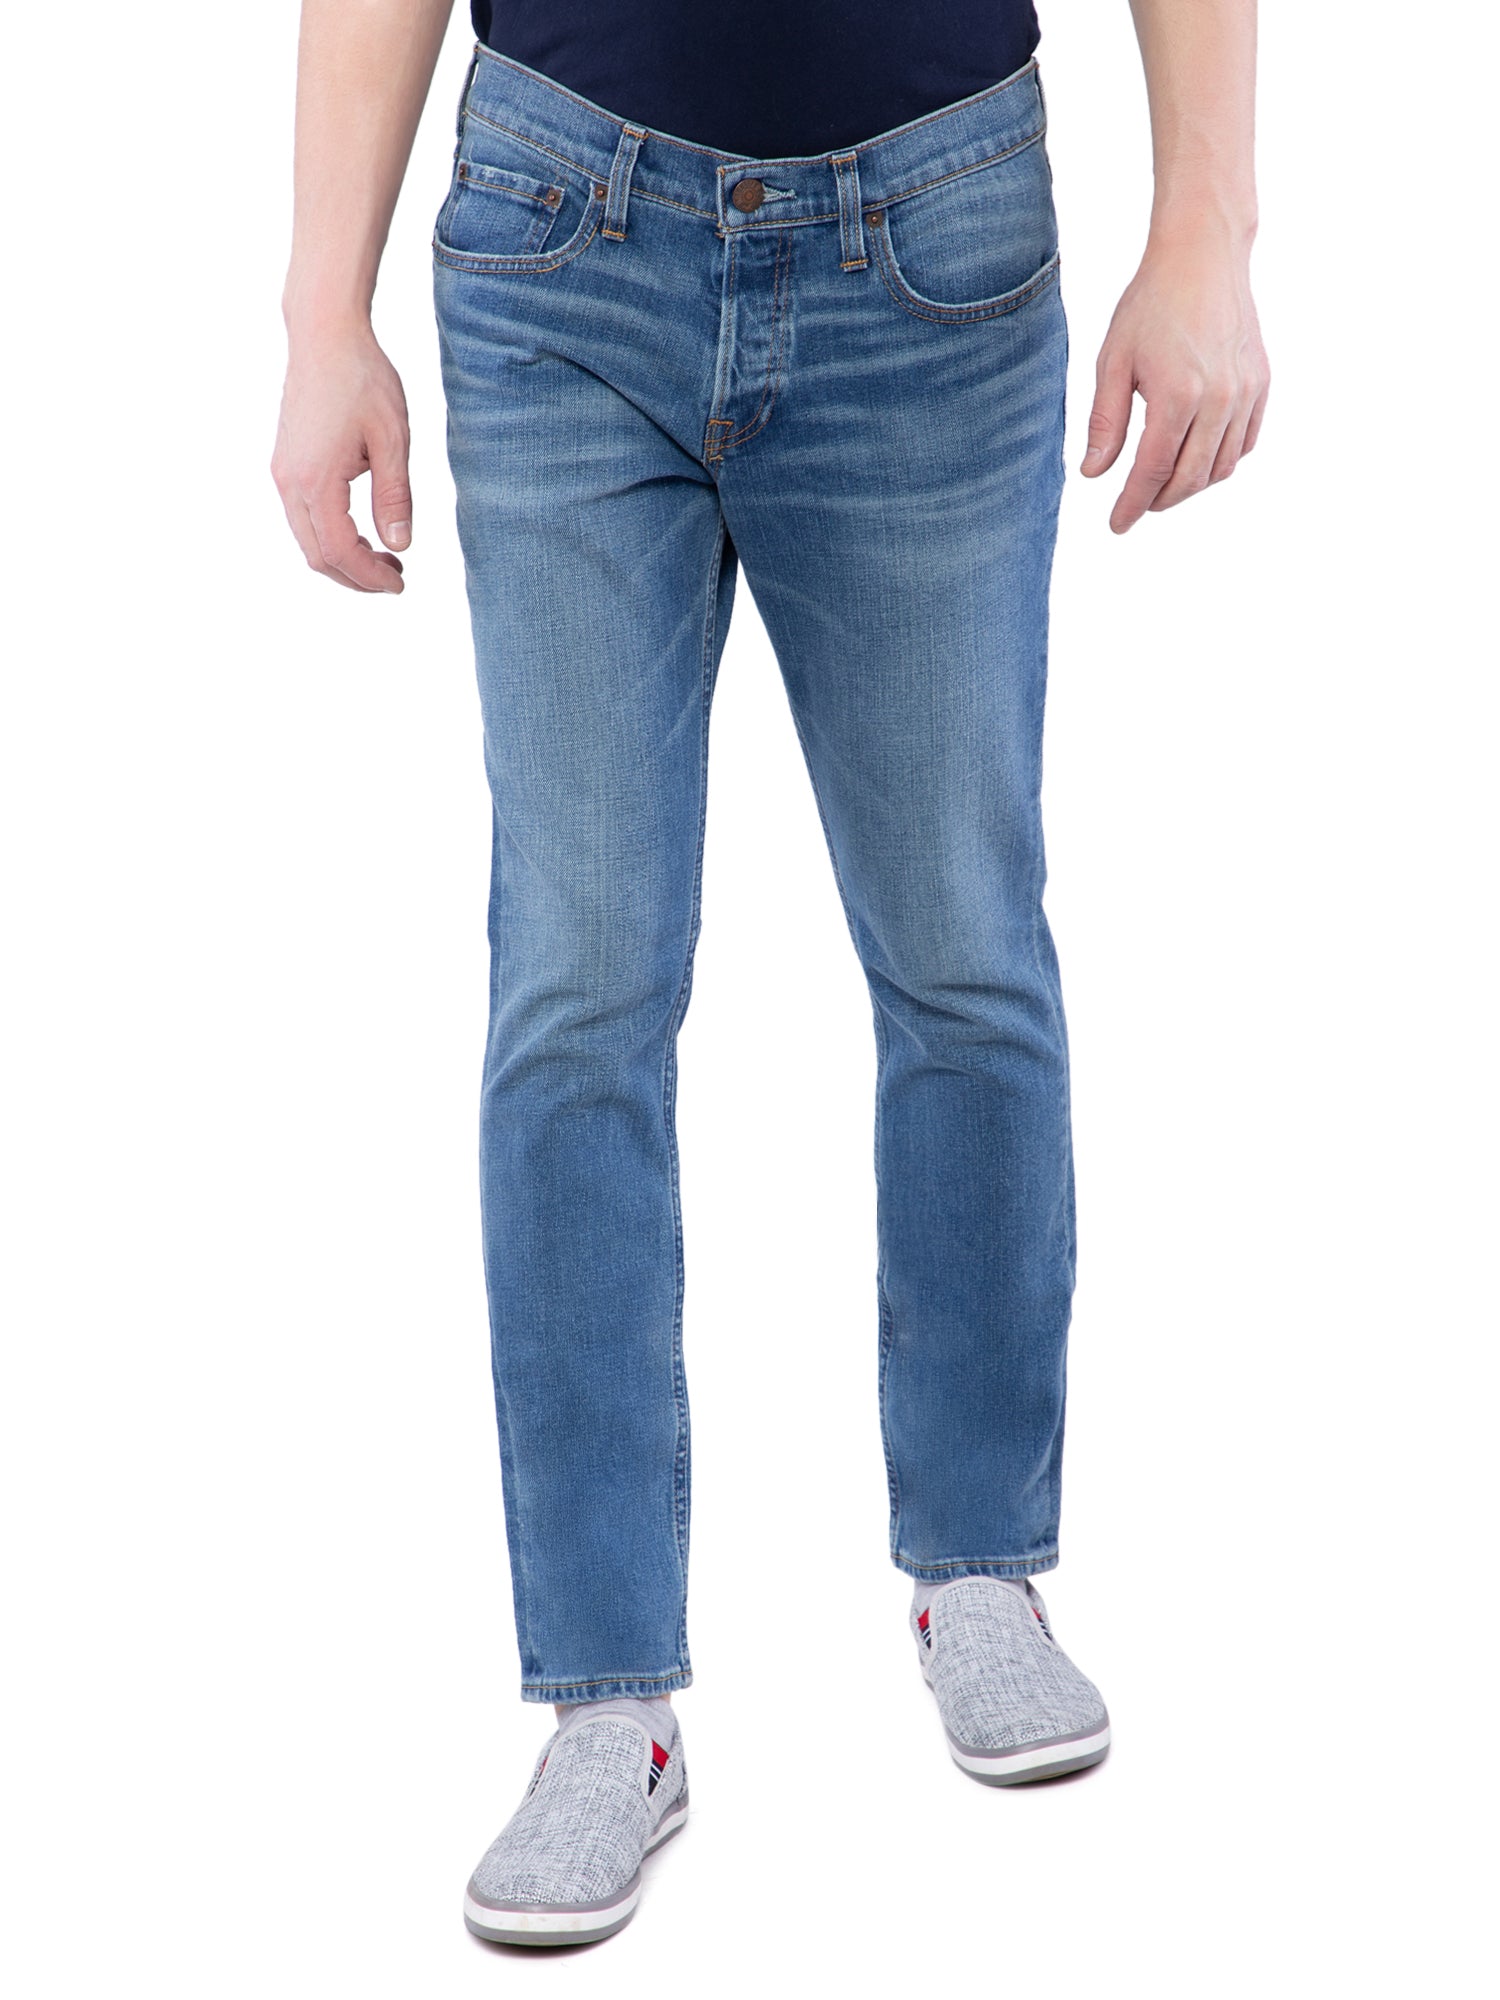 hollister skinny jeans mens